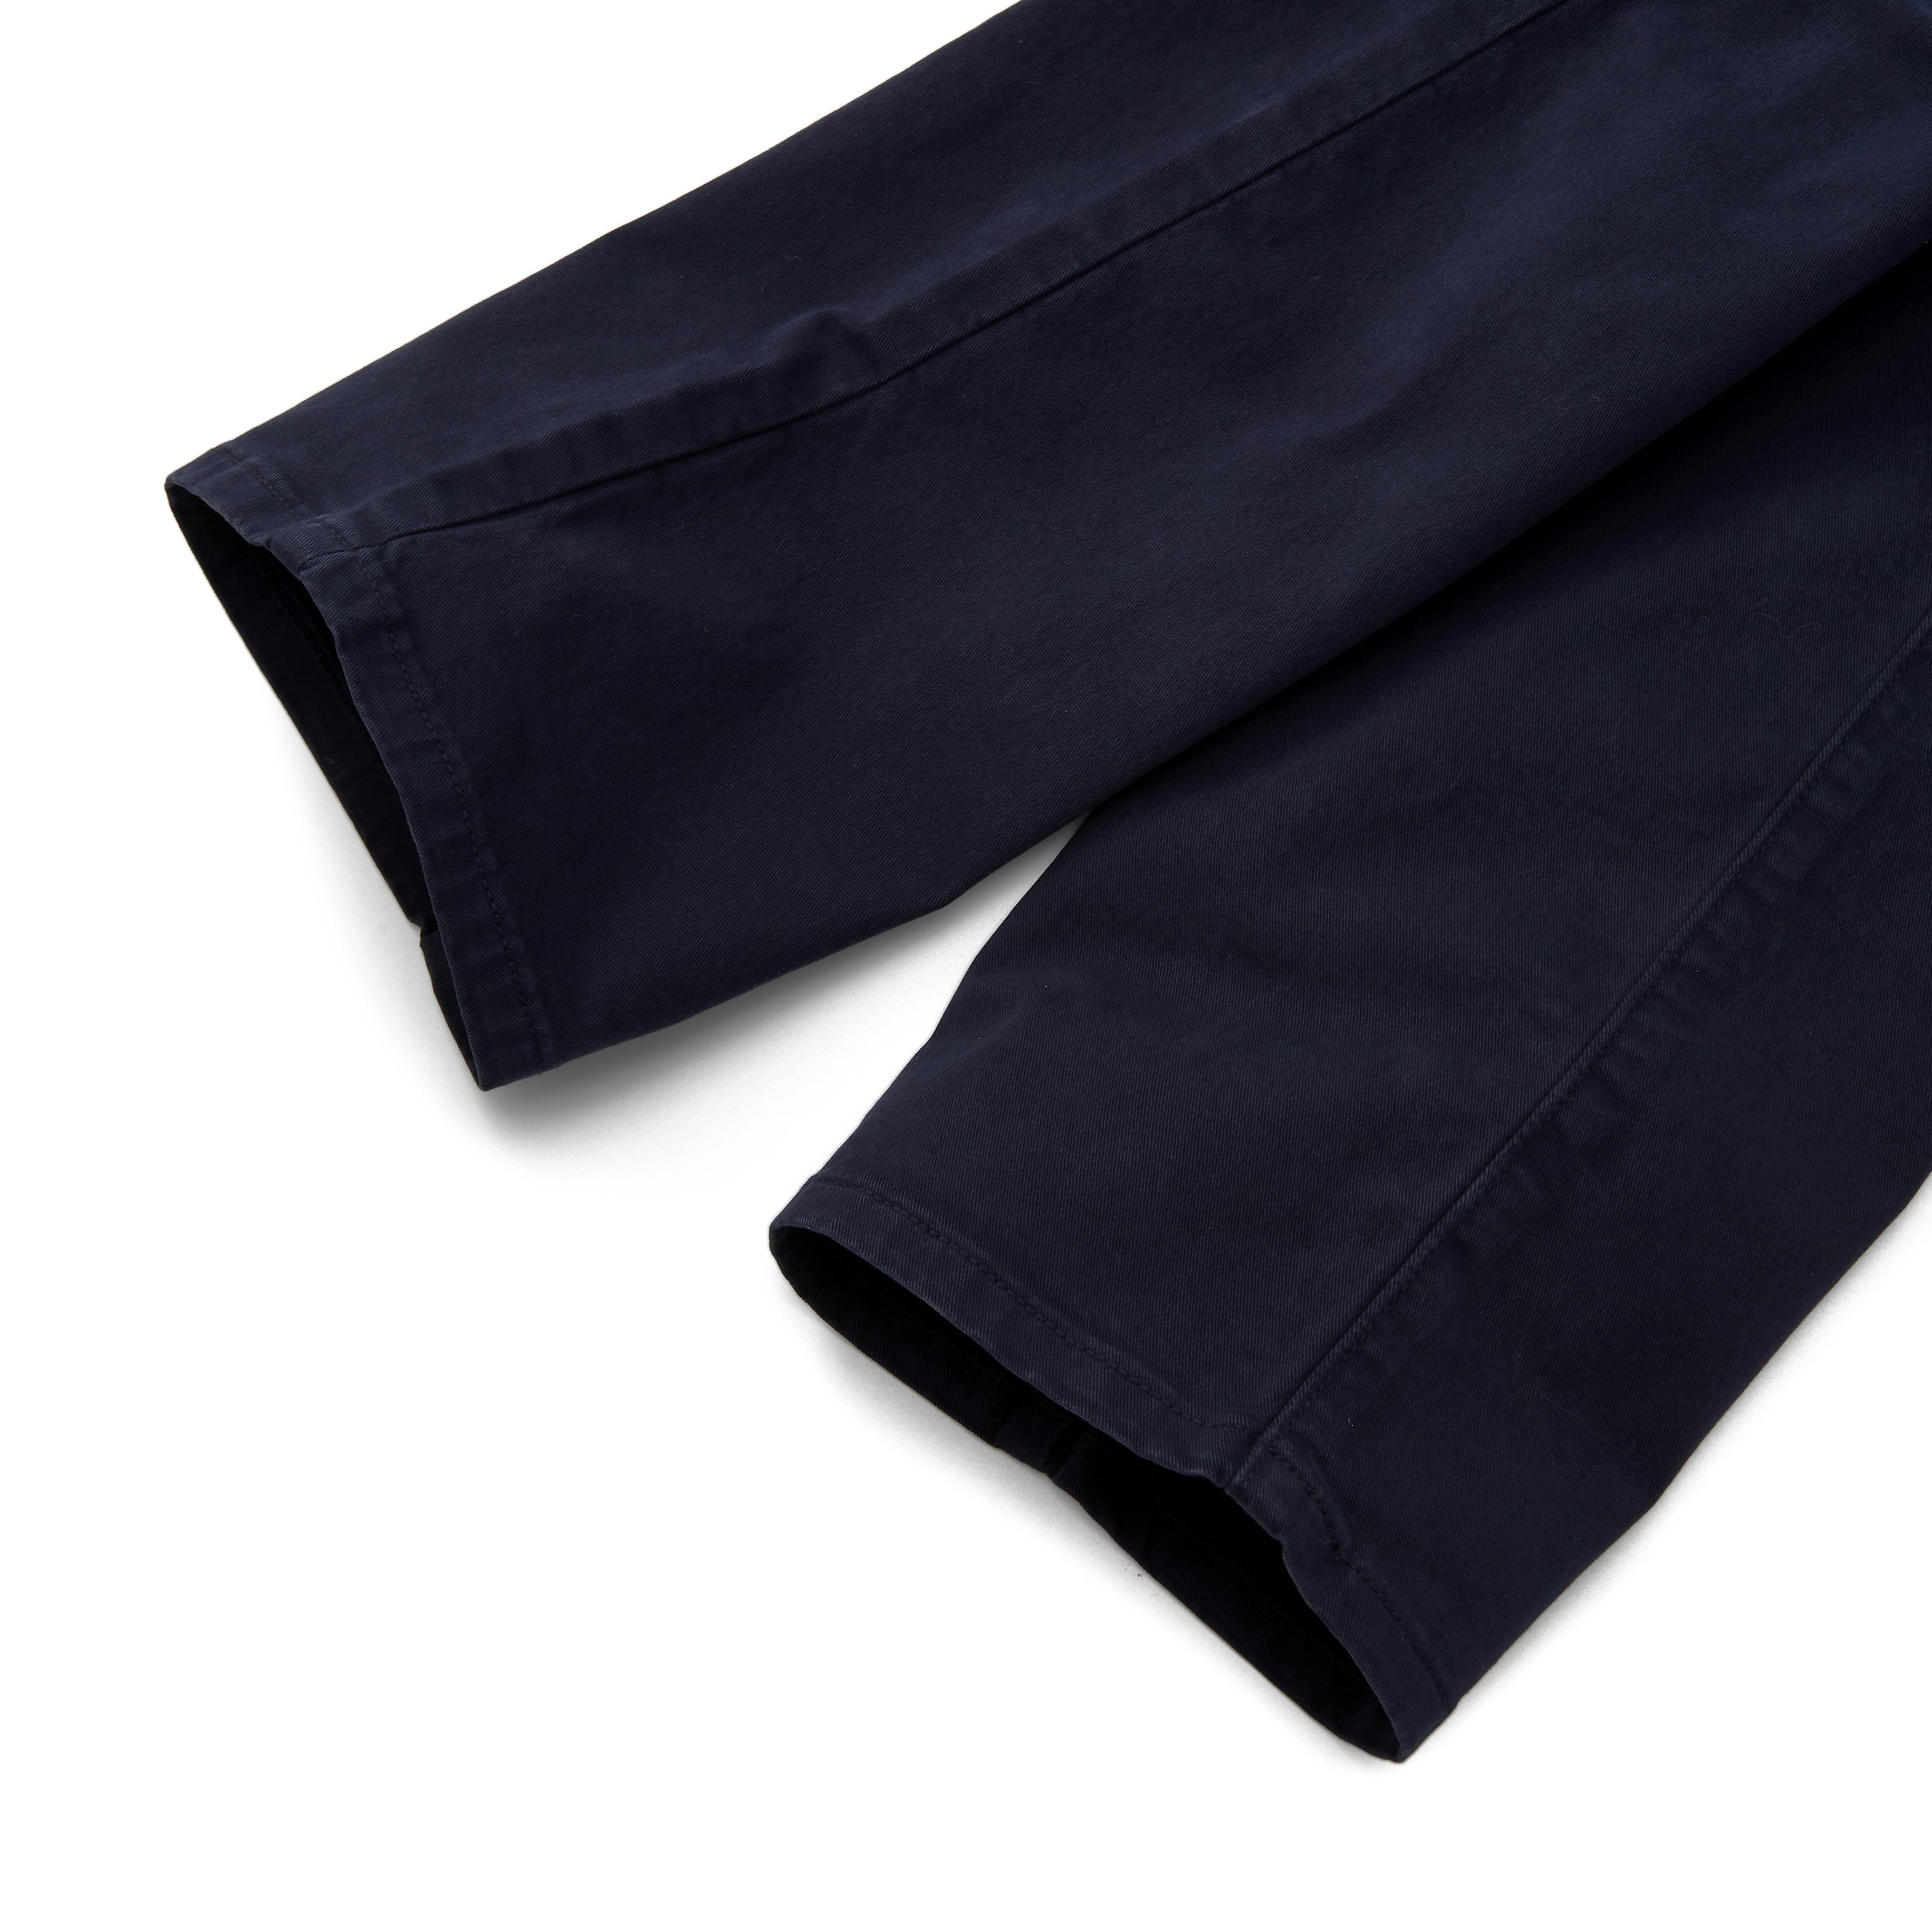 Aubin - Sailor - Dark blue track pants with white stripe - Molo